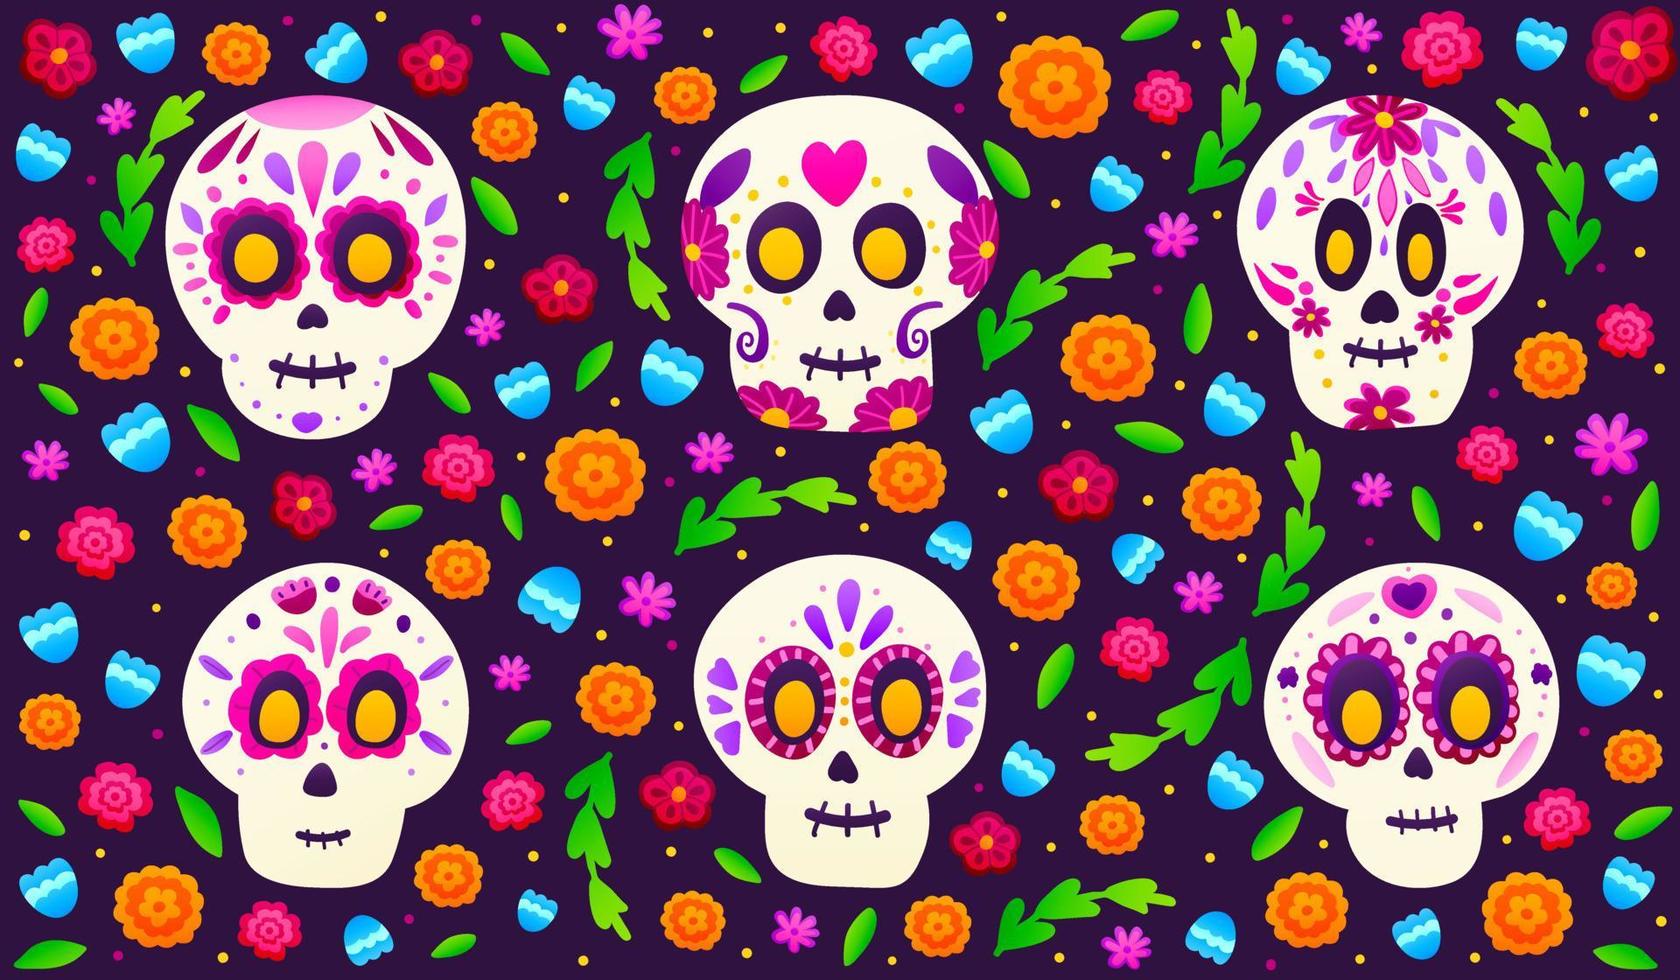 calaveras de azúcar con flores de colores sobre fondo oscuro, pancarta para el día de fiesta mexicano dia de los muertos en estilo de dibujos animados, adornado floral con caléndulas vector